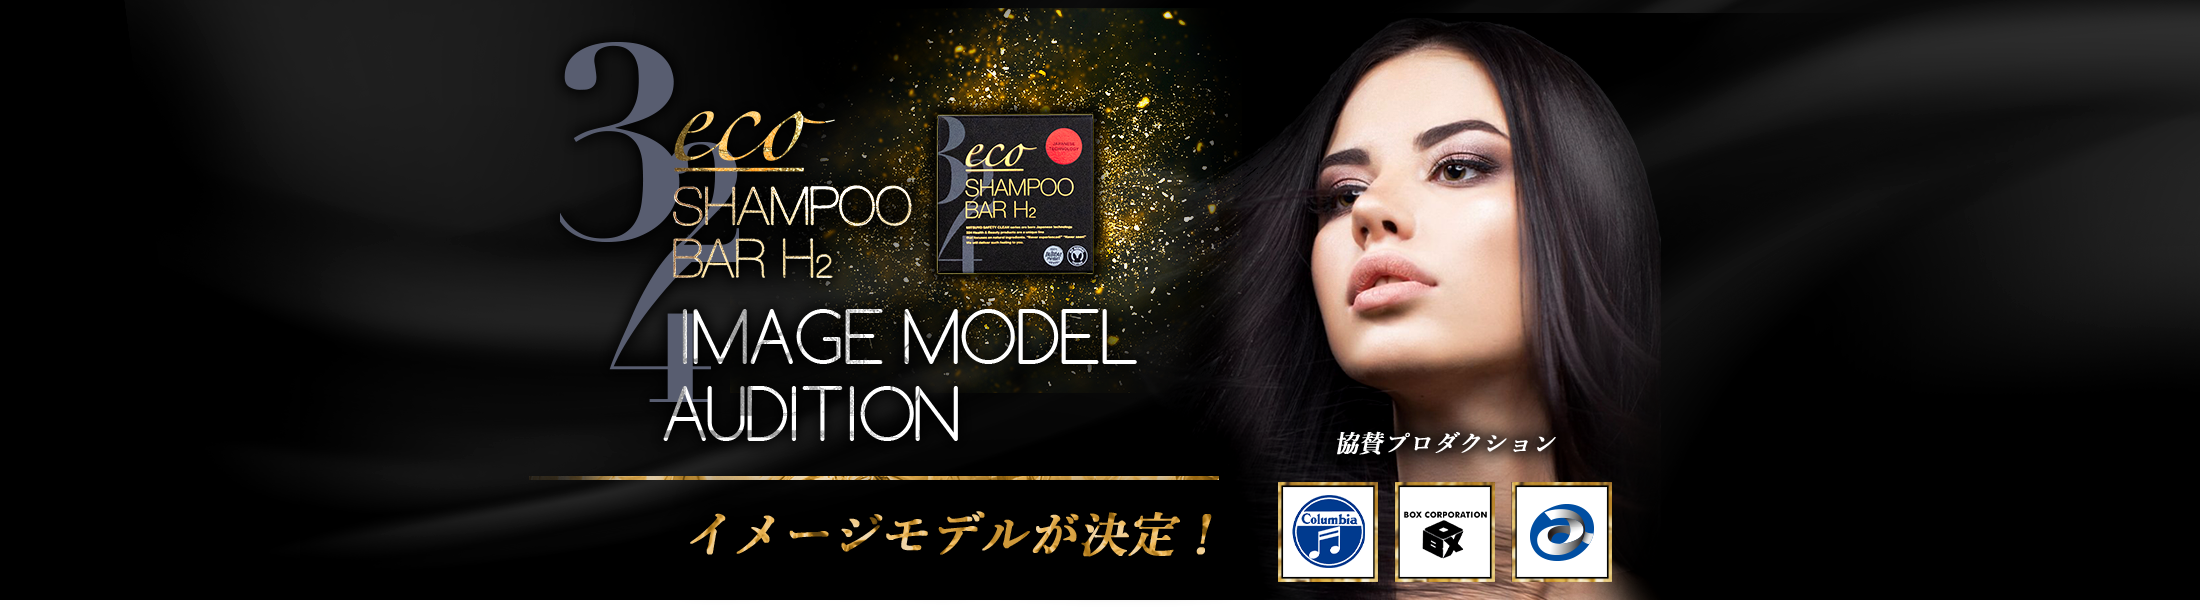 eco SHAMPOO BAR H2 イメージモデルオーディション イメージモデルが決定！